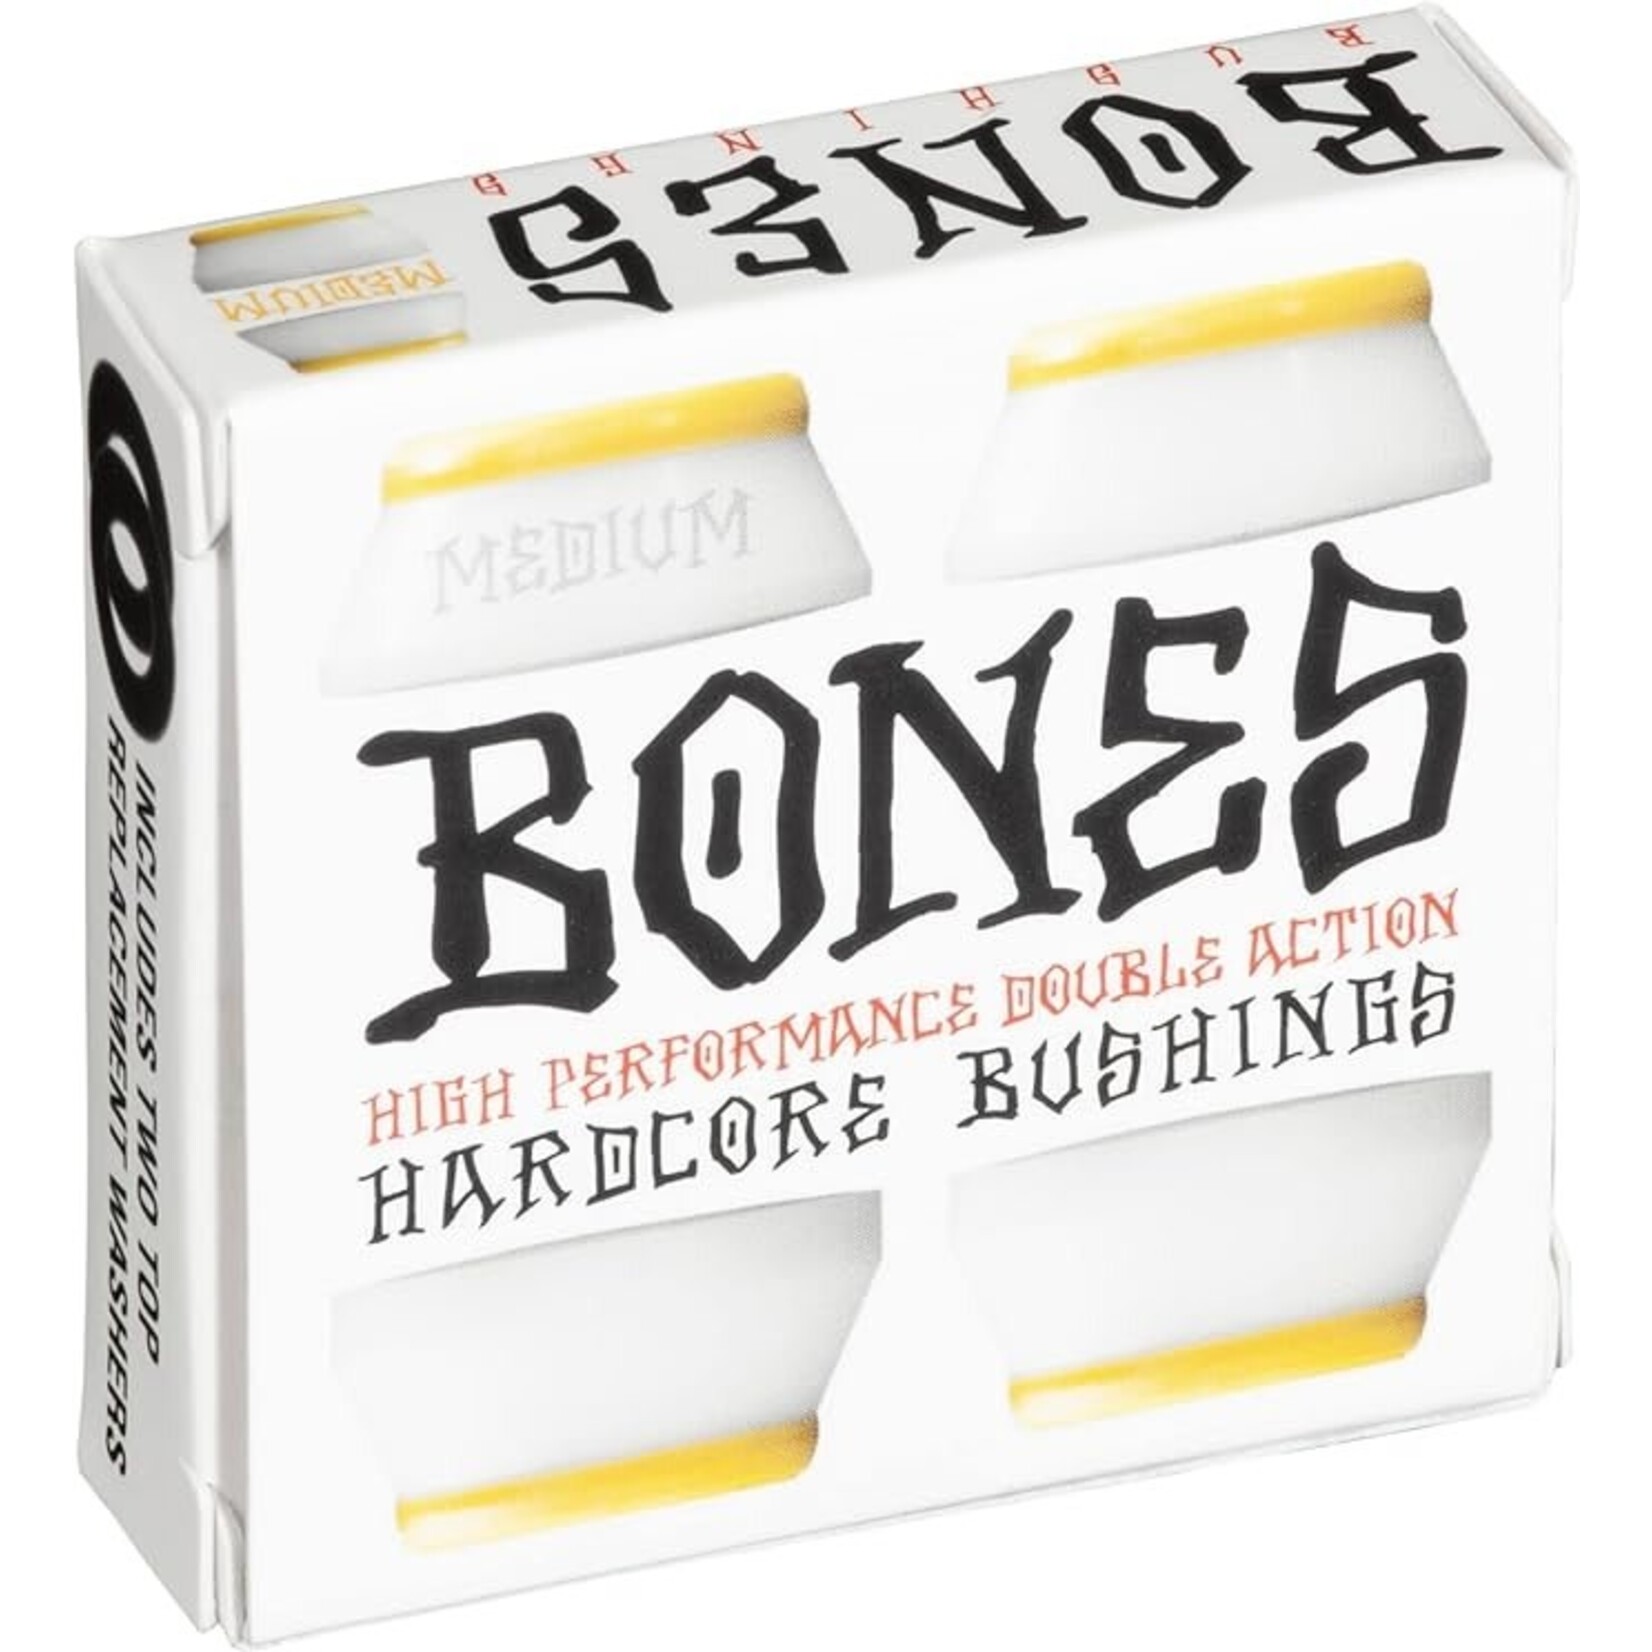 Bones Bushing-Bones-Medium